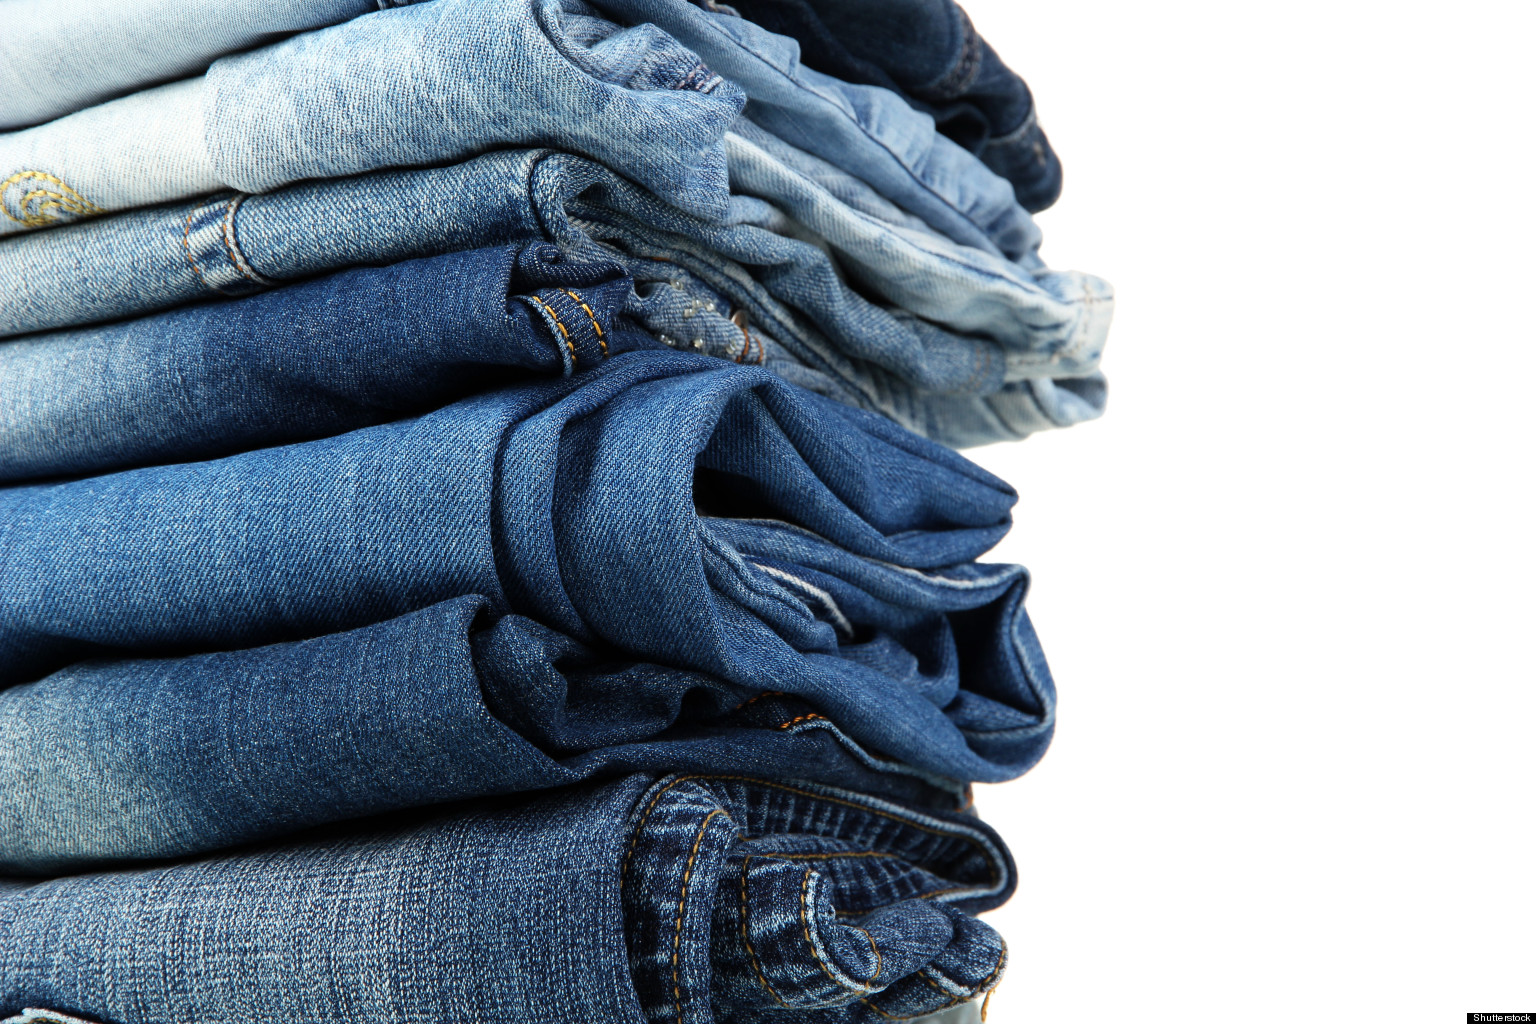 Bao lâu thì nên giặt quần jeans một lần?